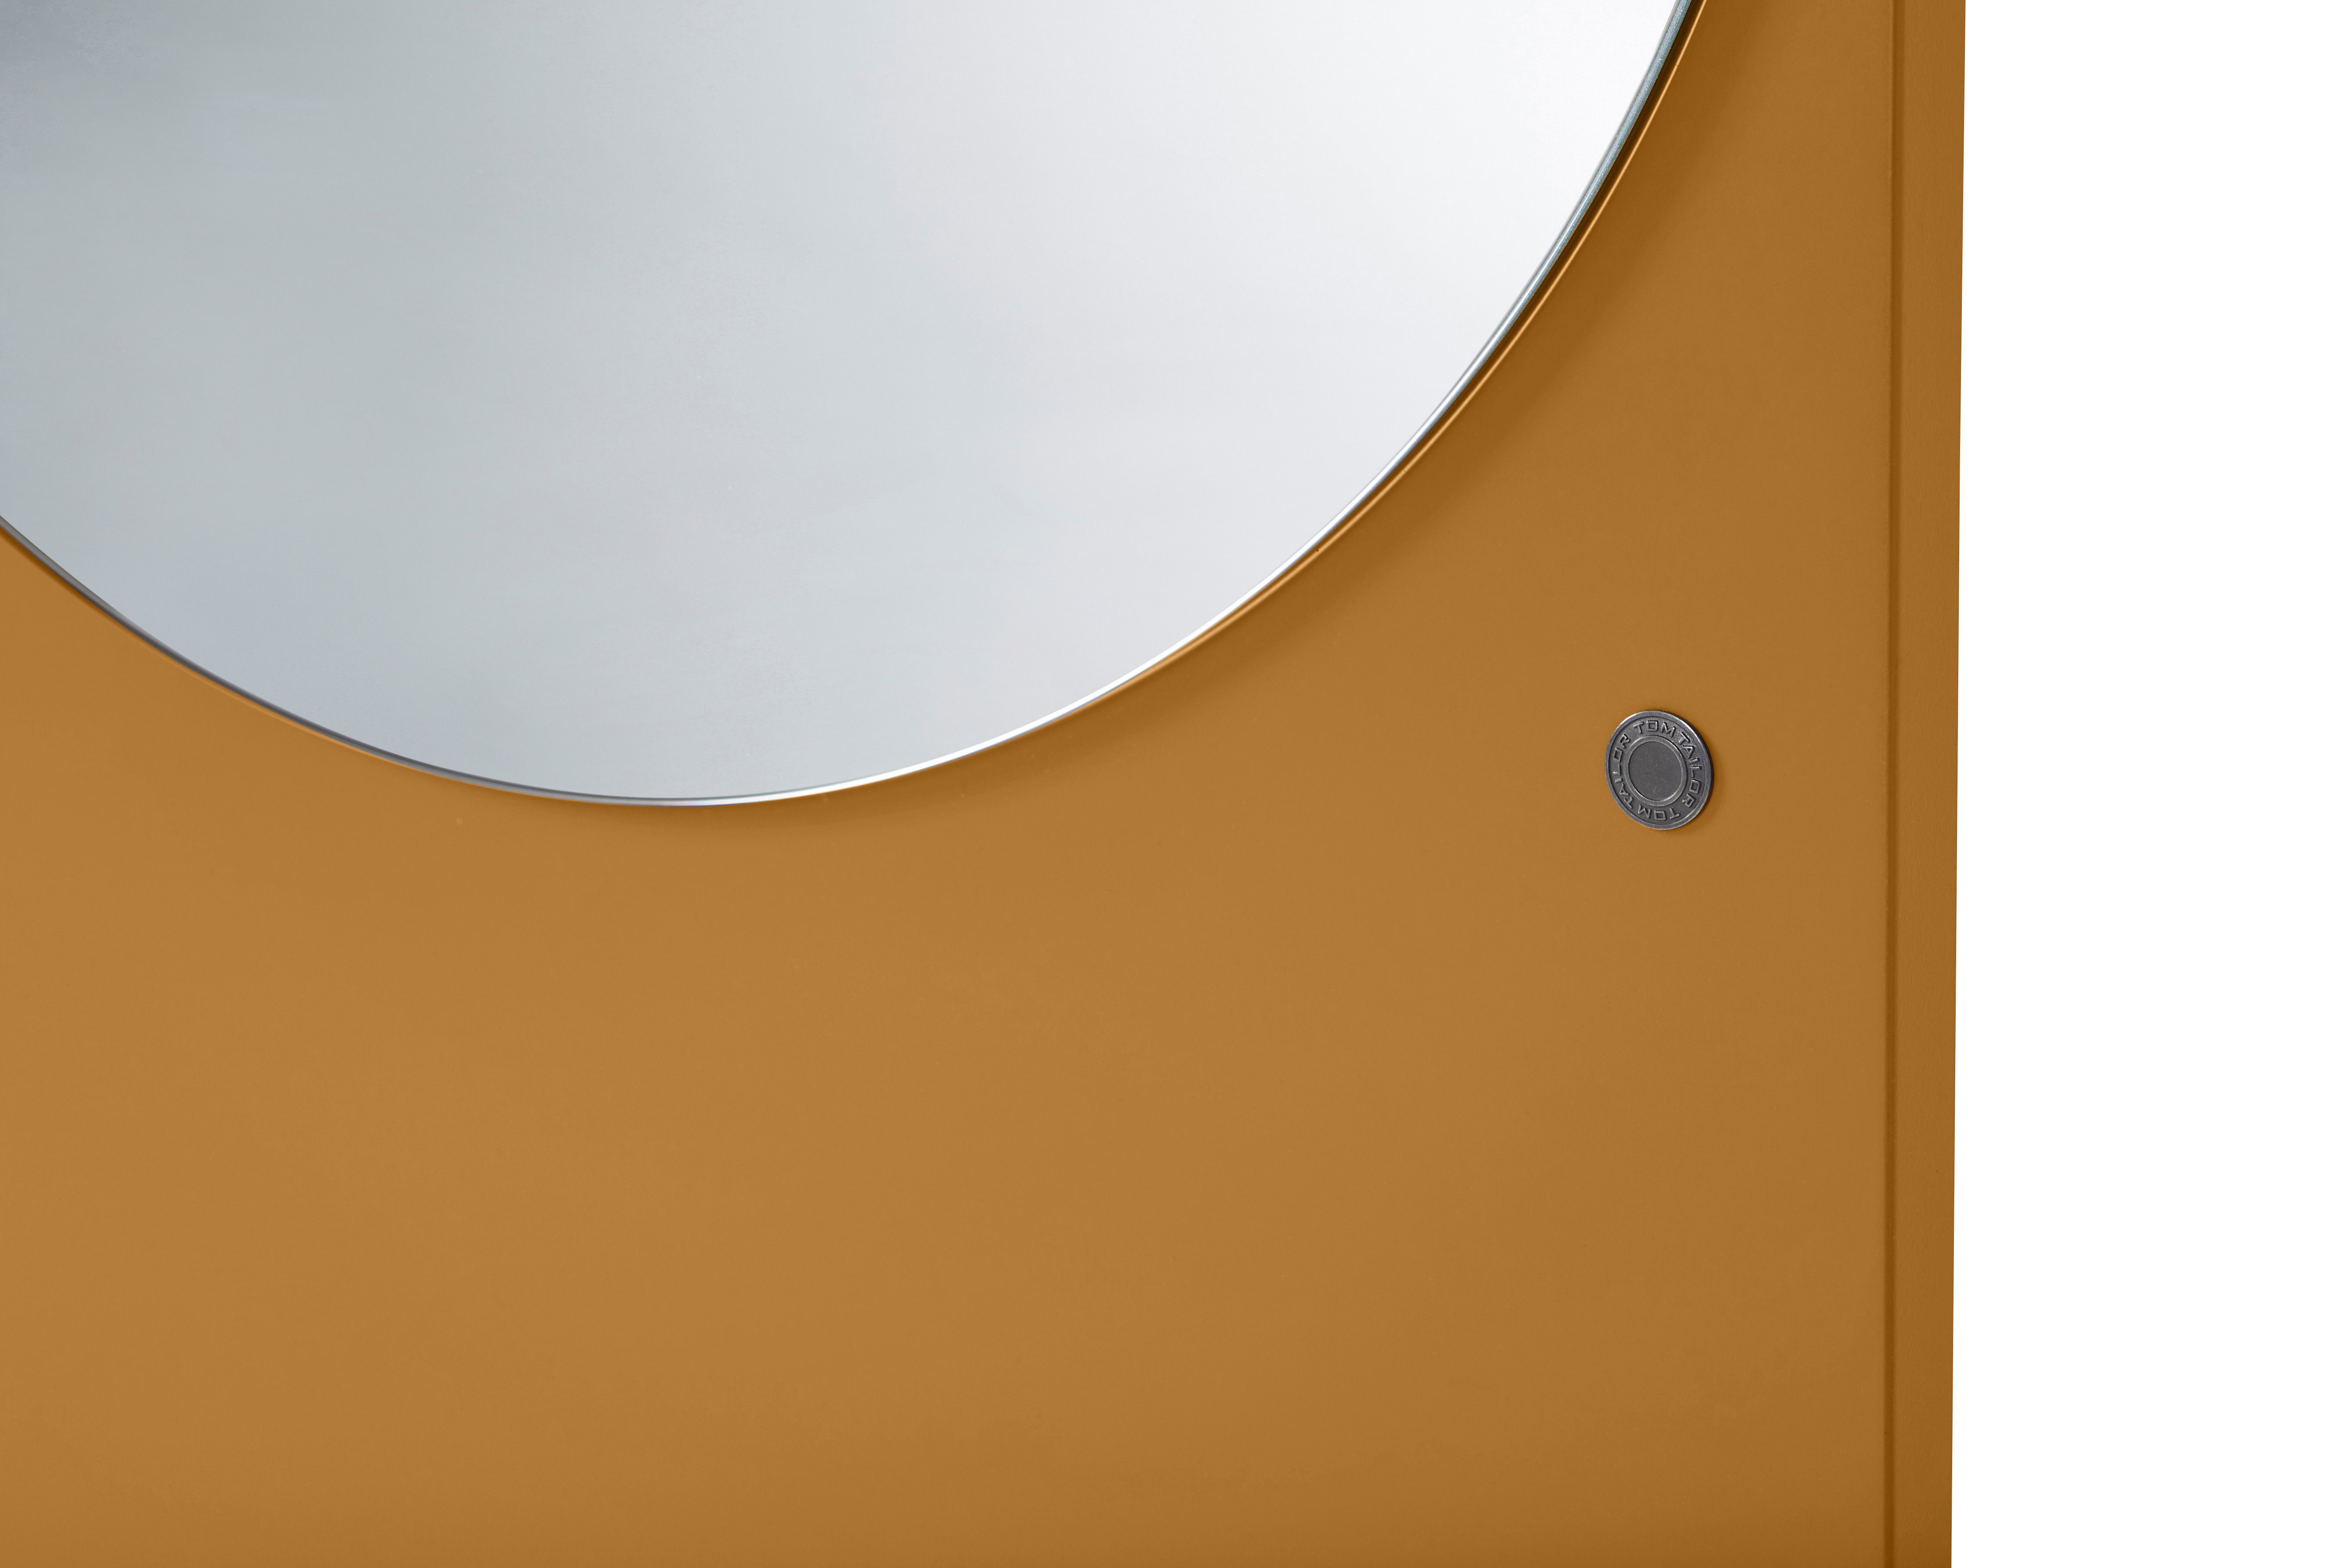 lackiert, Spiegel in TAILOR farbiges besonderer COLOR Farben Wandlehnender Standspiegel Highlight Form - hochwertig schönen MIRROR mustard_029 vielen & in - HOME TOM